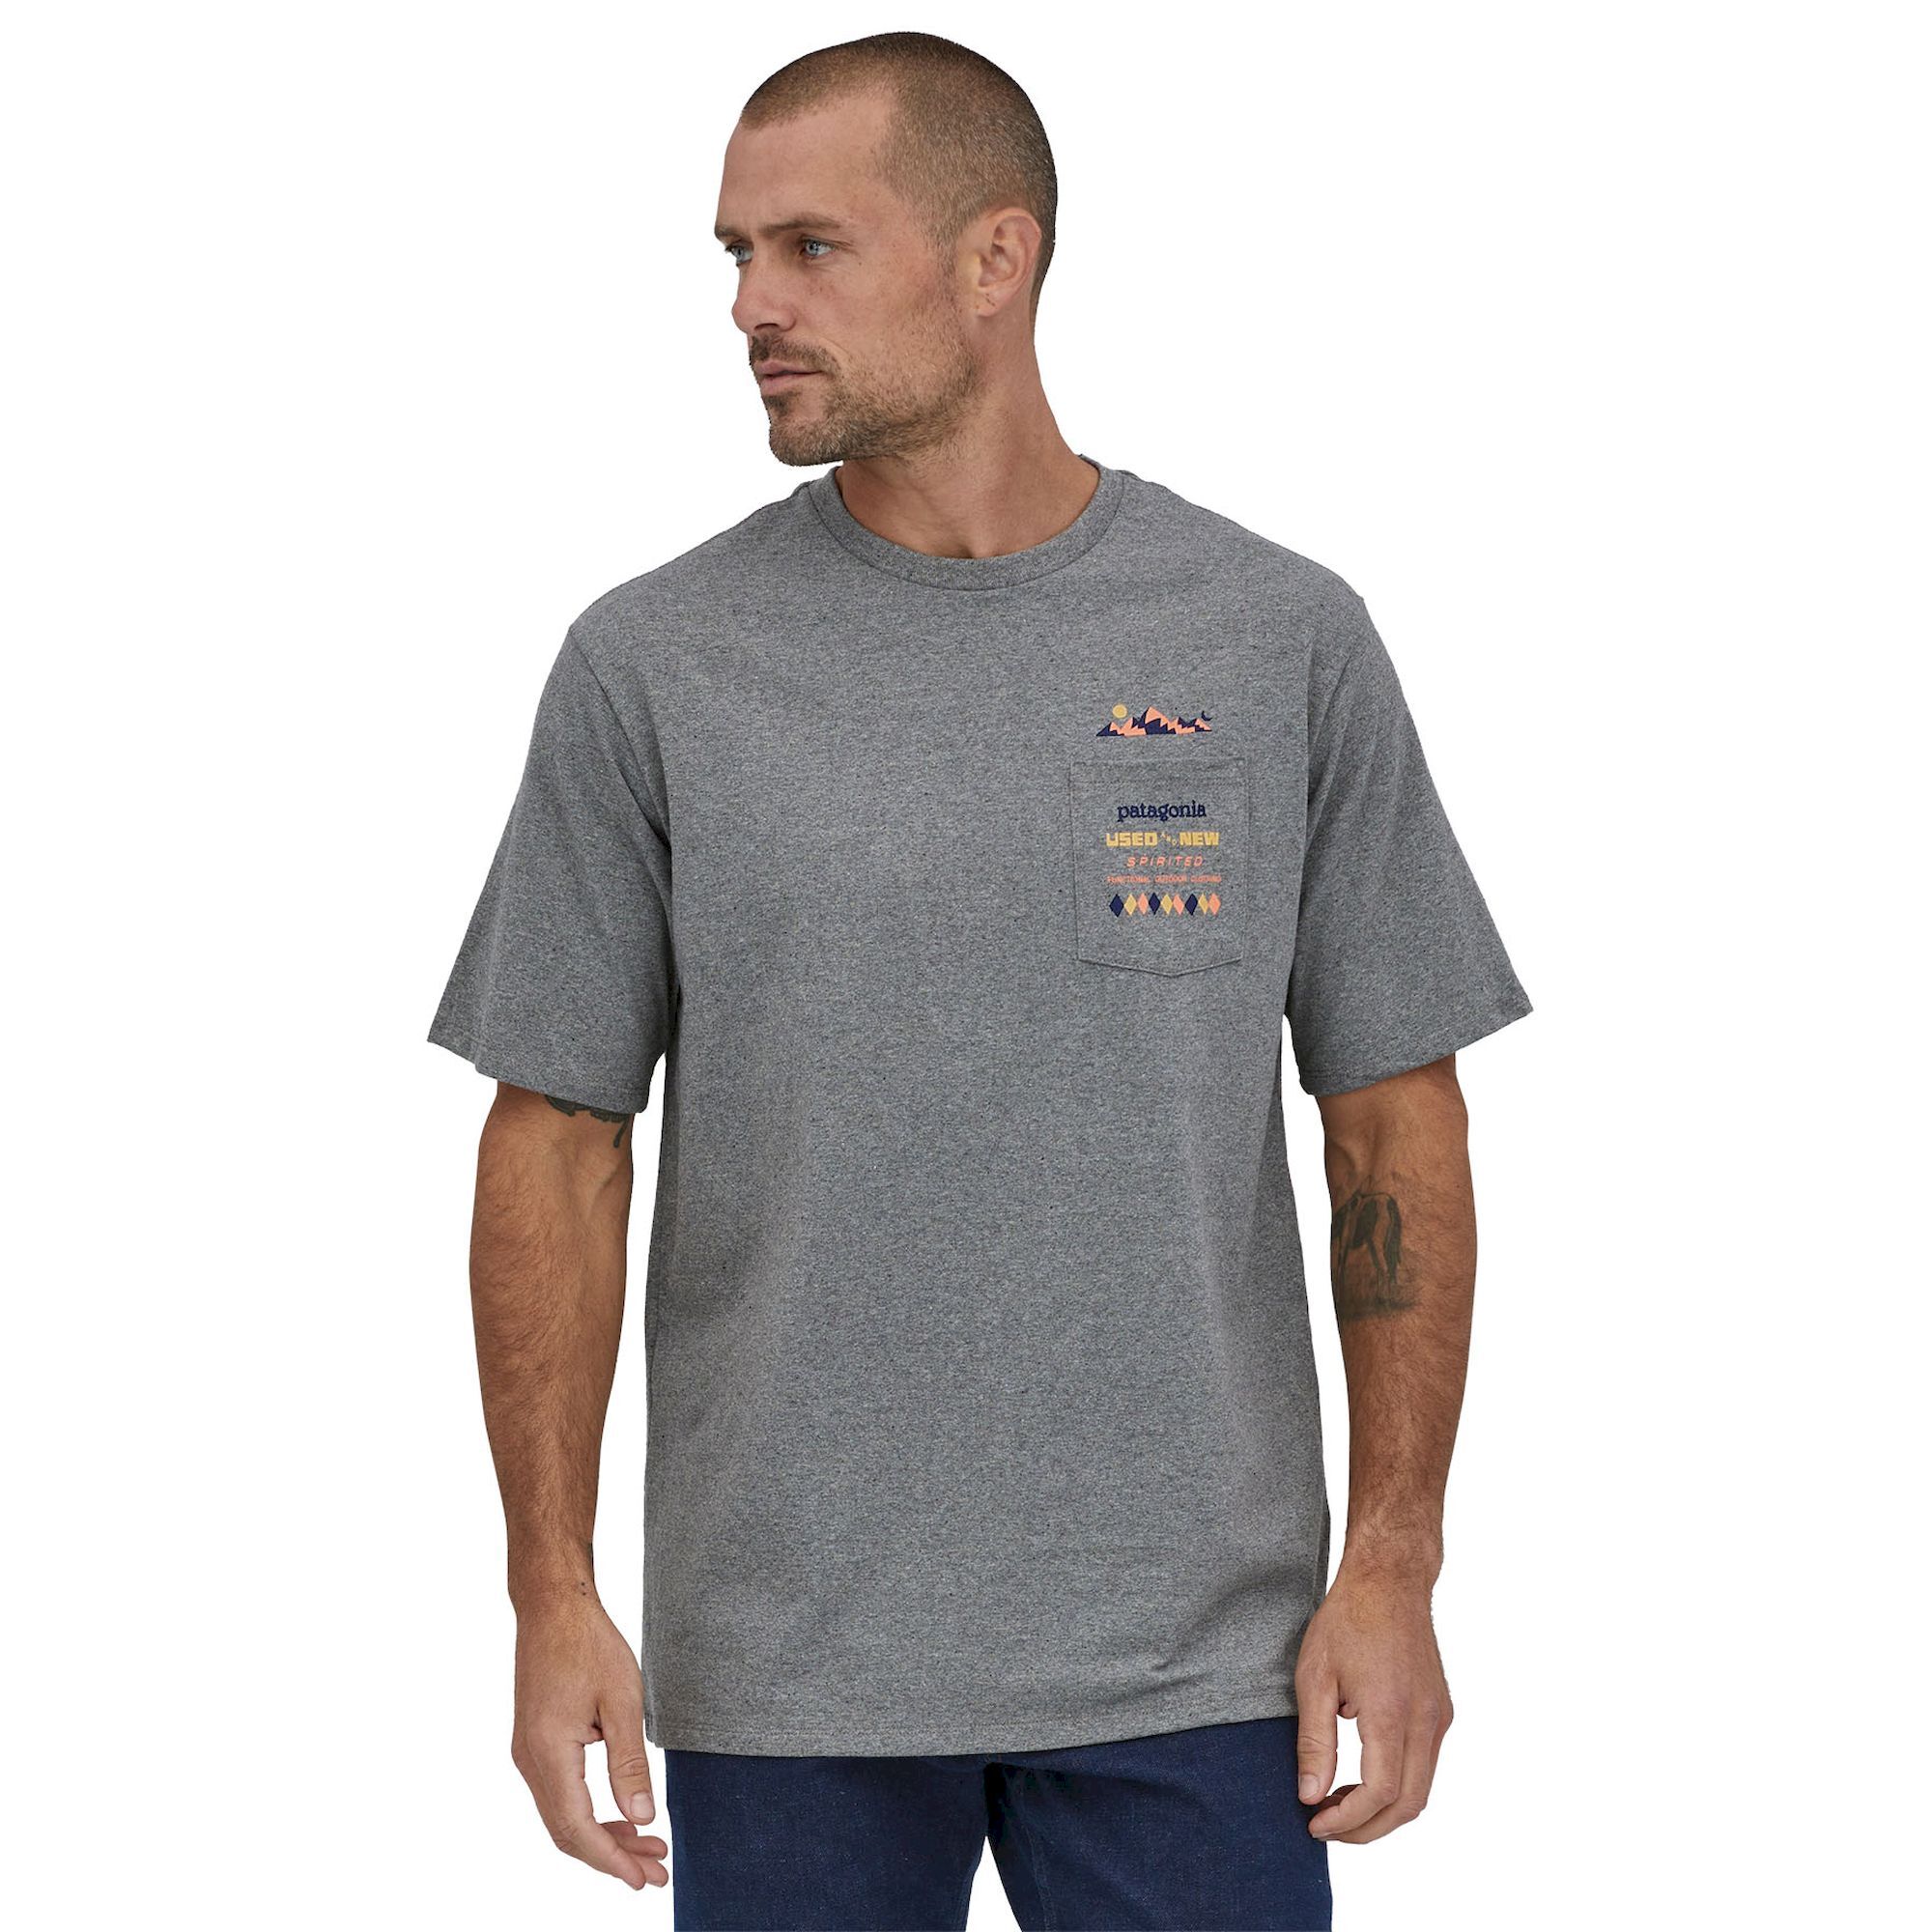 Patagonia Spirited Seasons Pocket Responsibili-Tee - T-shirt - Men's